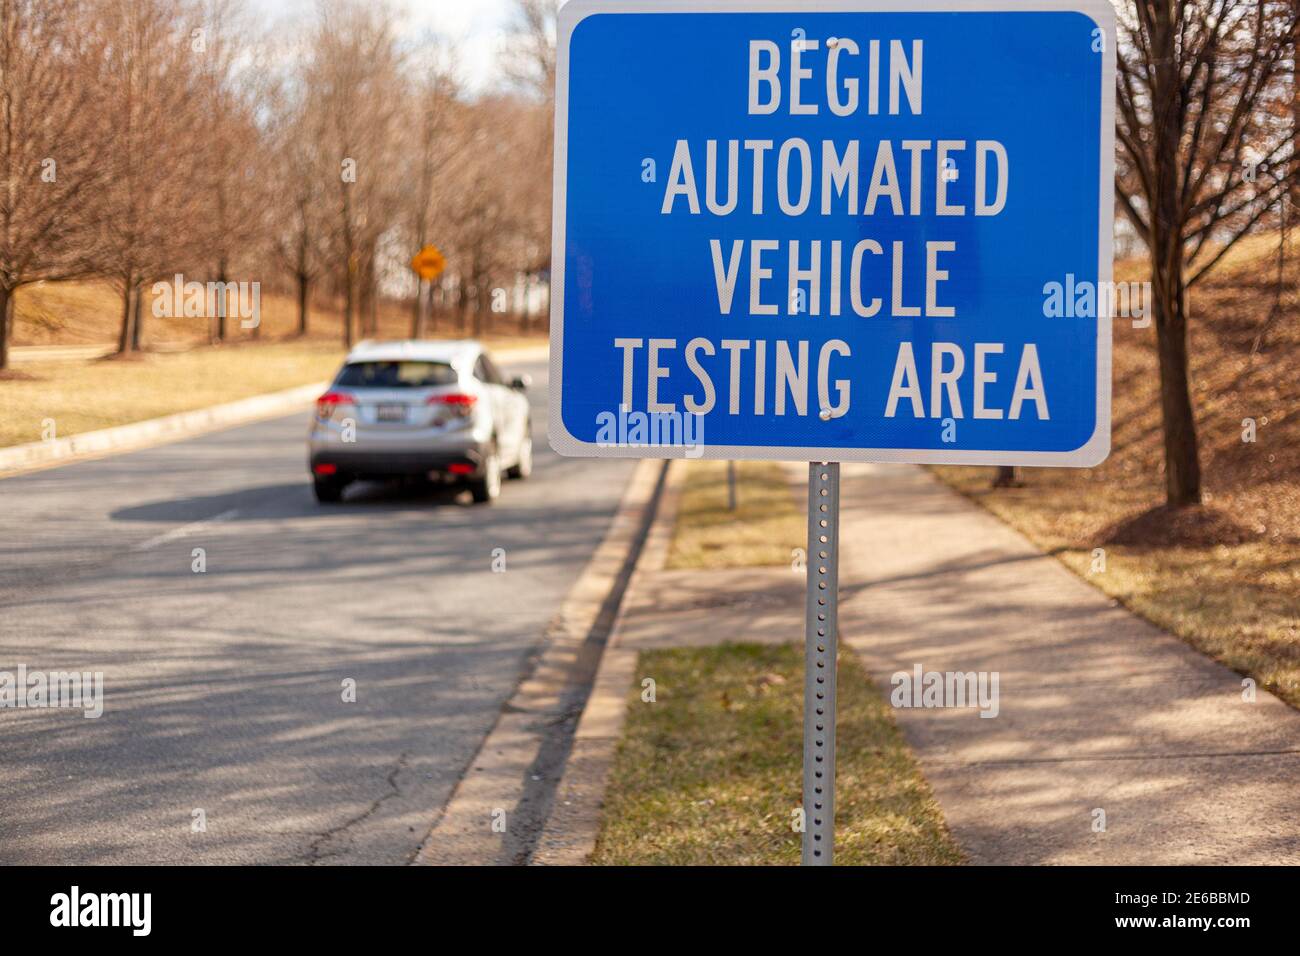 Cerrar imagen aislada de una señal de carretera cerca de Washington DC que dice: Comenzar el Área de pruebas automatizadas de vehículos. Este es uno de los pocos lugares en EE.UU. Donde se Foto de stock